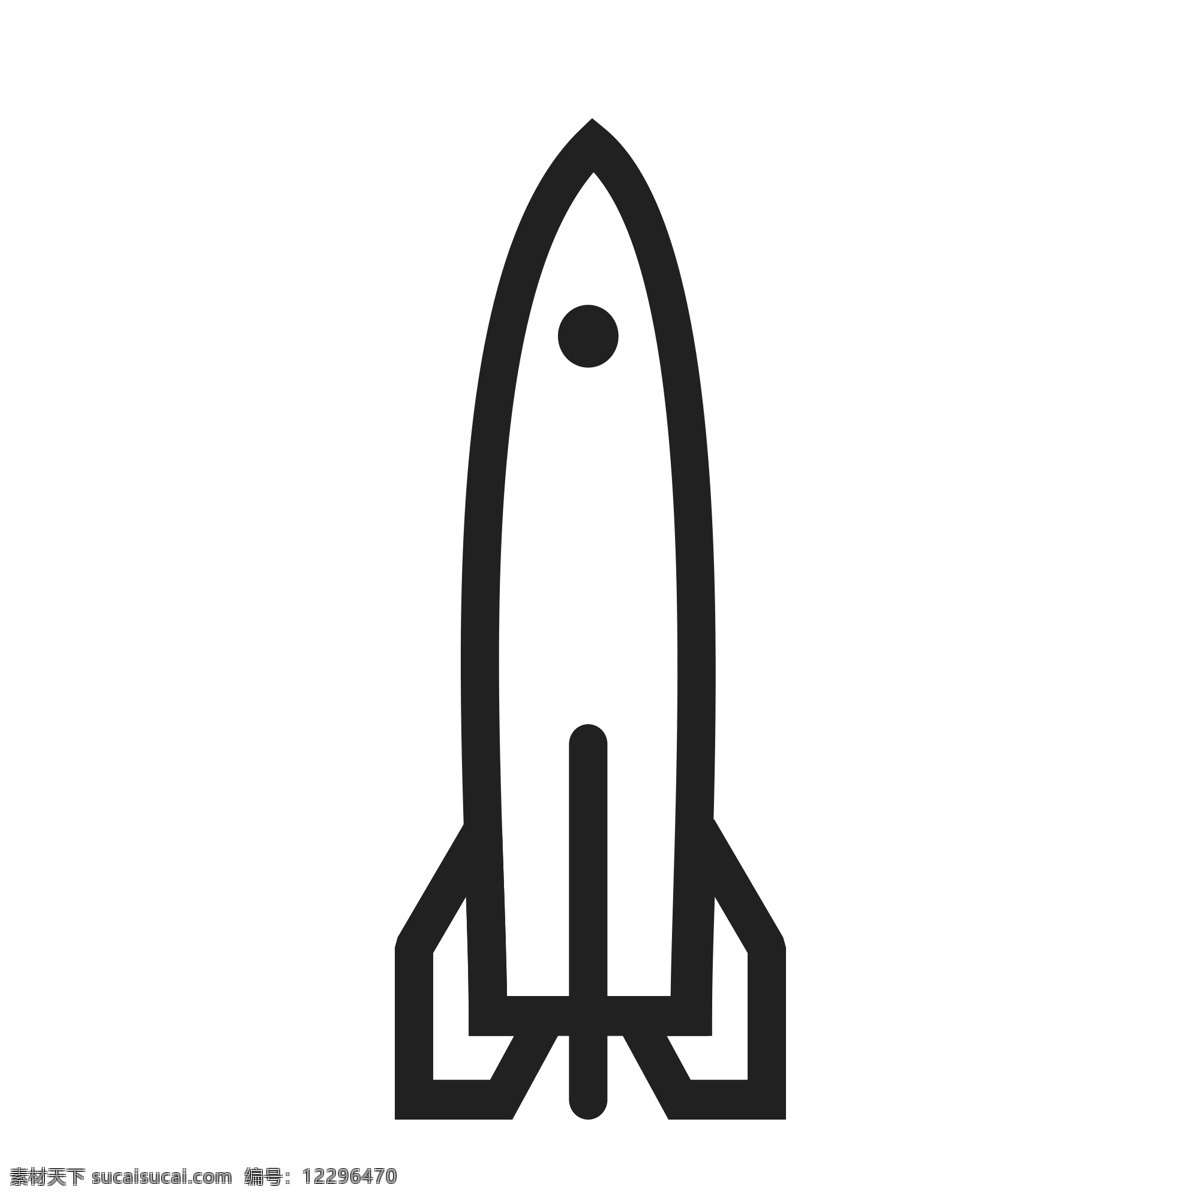 扁平化小火箭 小飞船 扁平化ui ui图标 手机图标 界面ui 网页ui h5图标